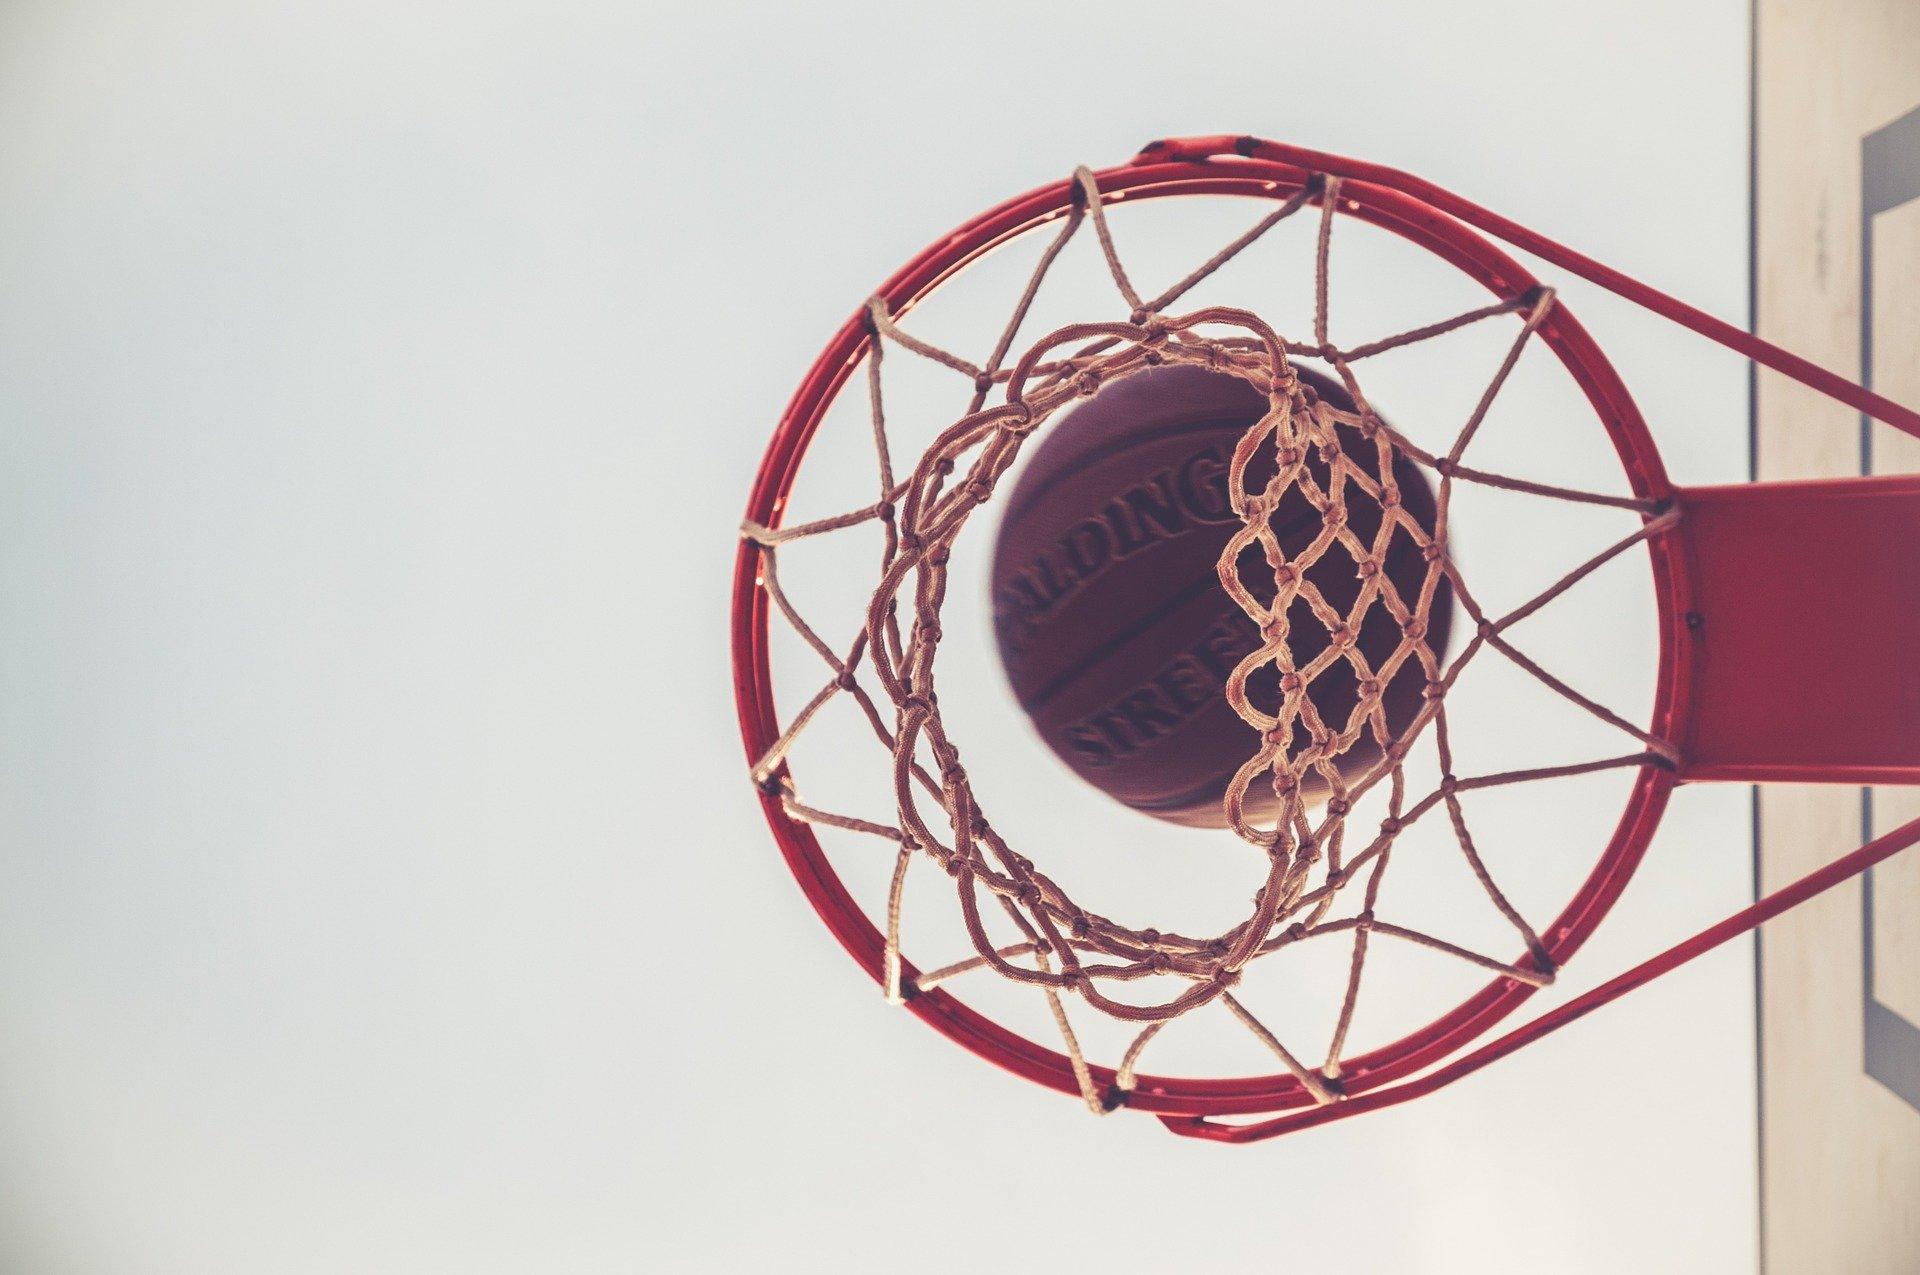 Ein Bild von einem Basketballkorb